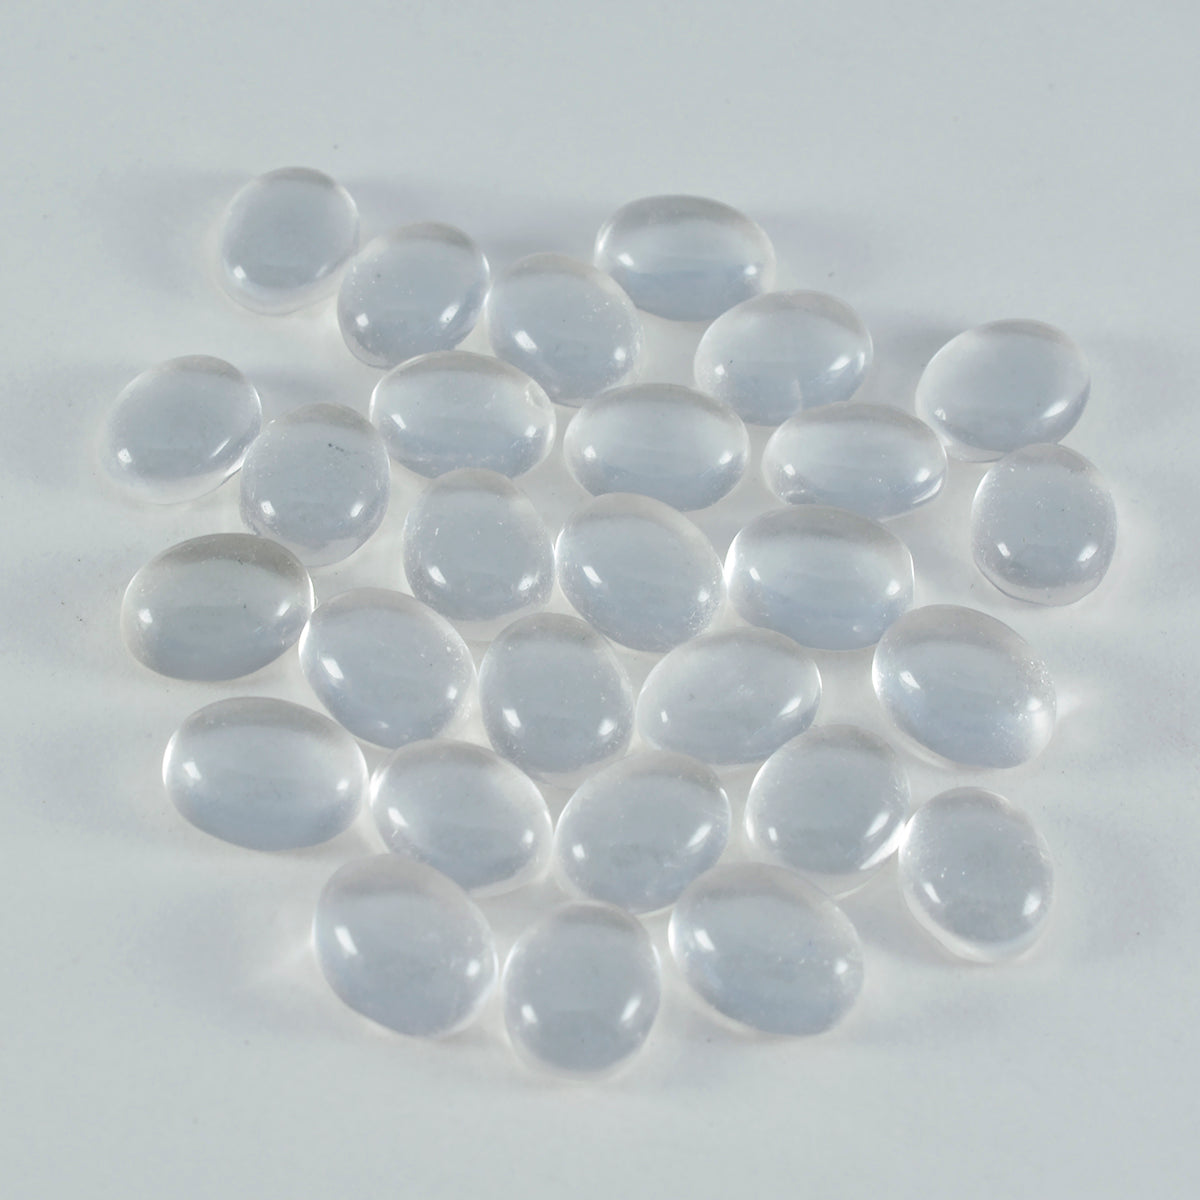 riyogems 1 pezzo di cabochon di quarzo di cristallo bianco 6x8 mm di forma ovale di qualità sorprendente, pietra preziosa sfusa